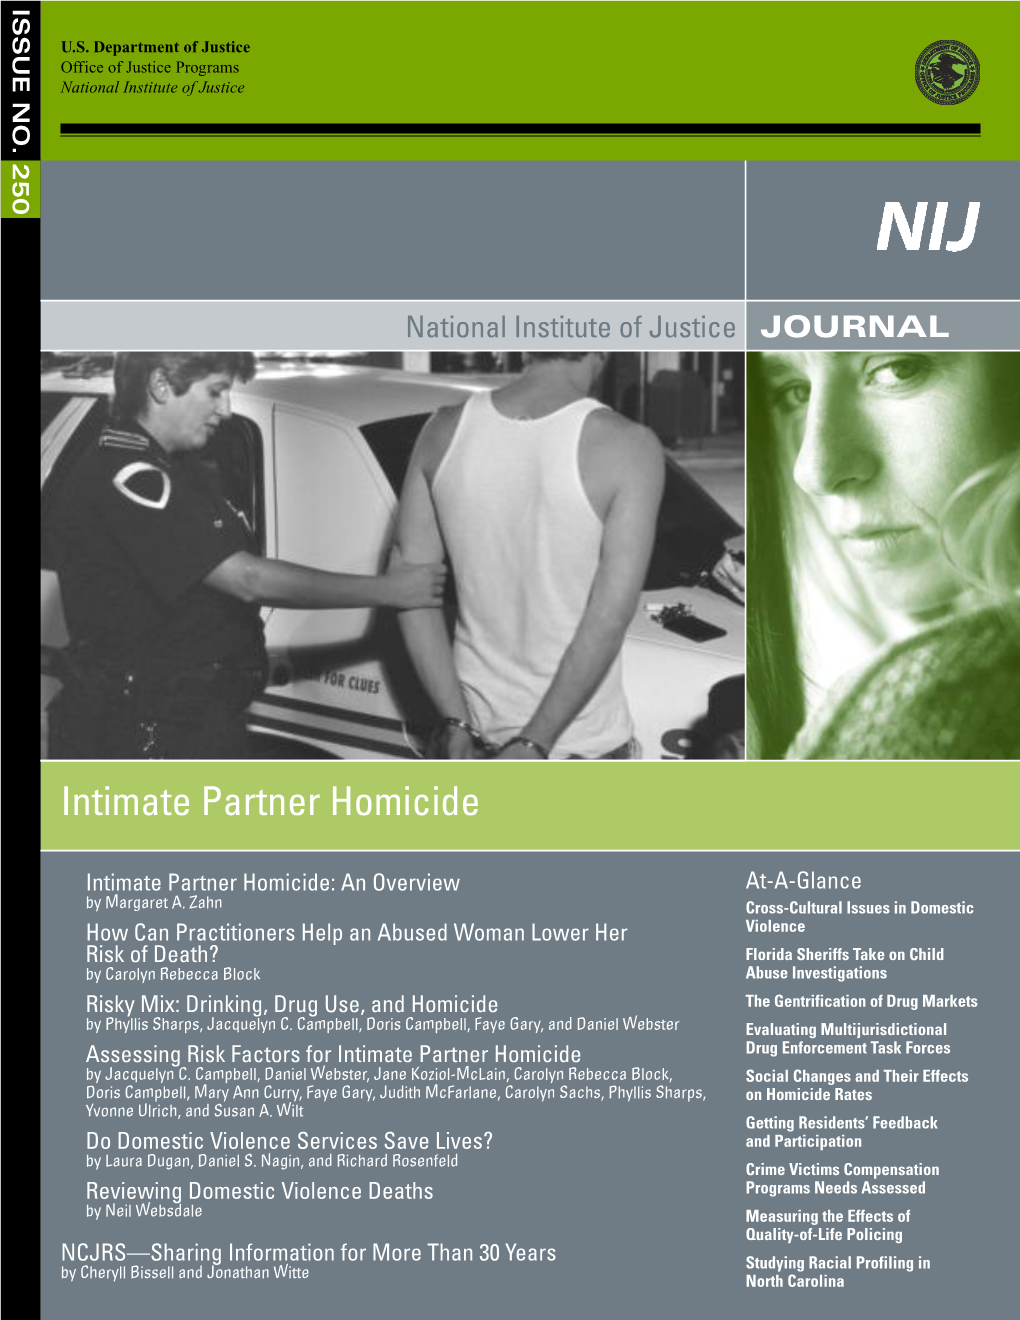 Assessing Risk Factors for Intimate Partner Homicide Drug Enforcement Task Forces by Jacquelyn C